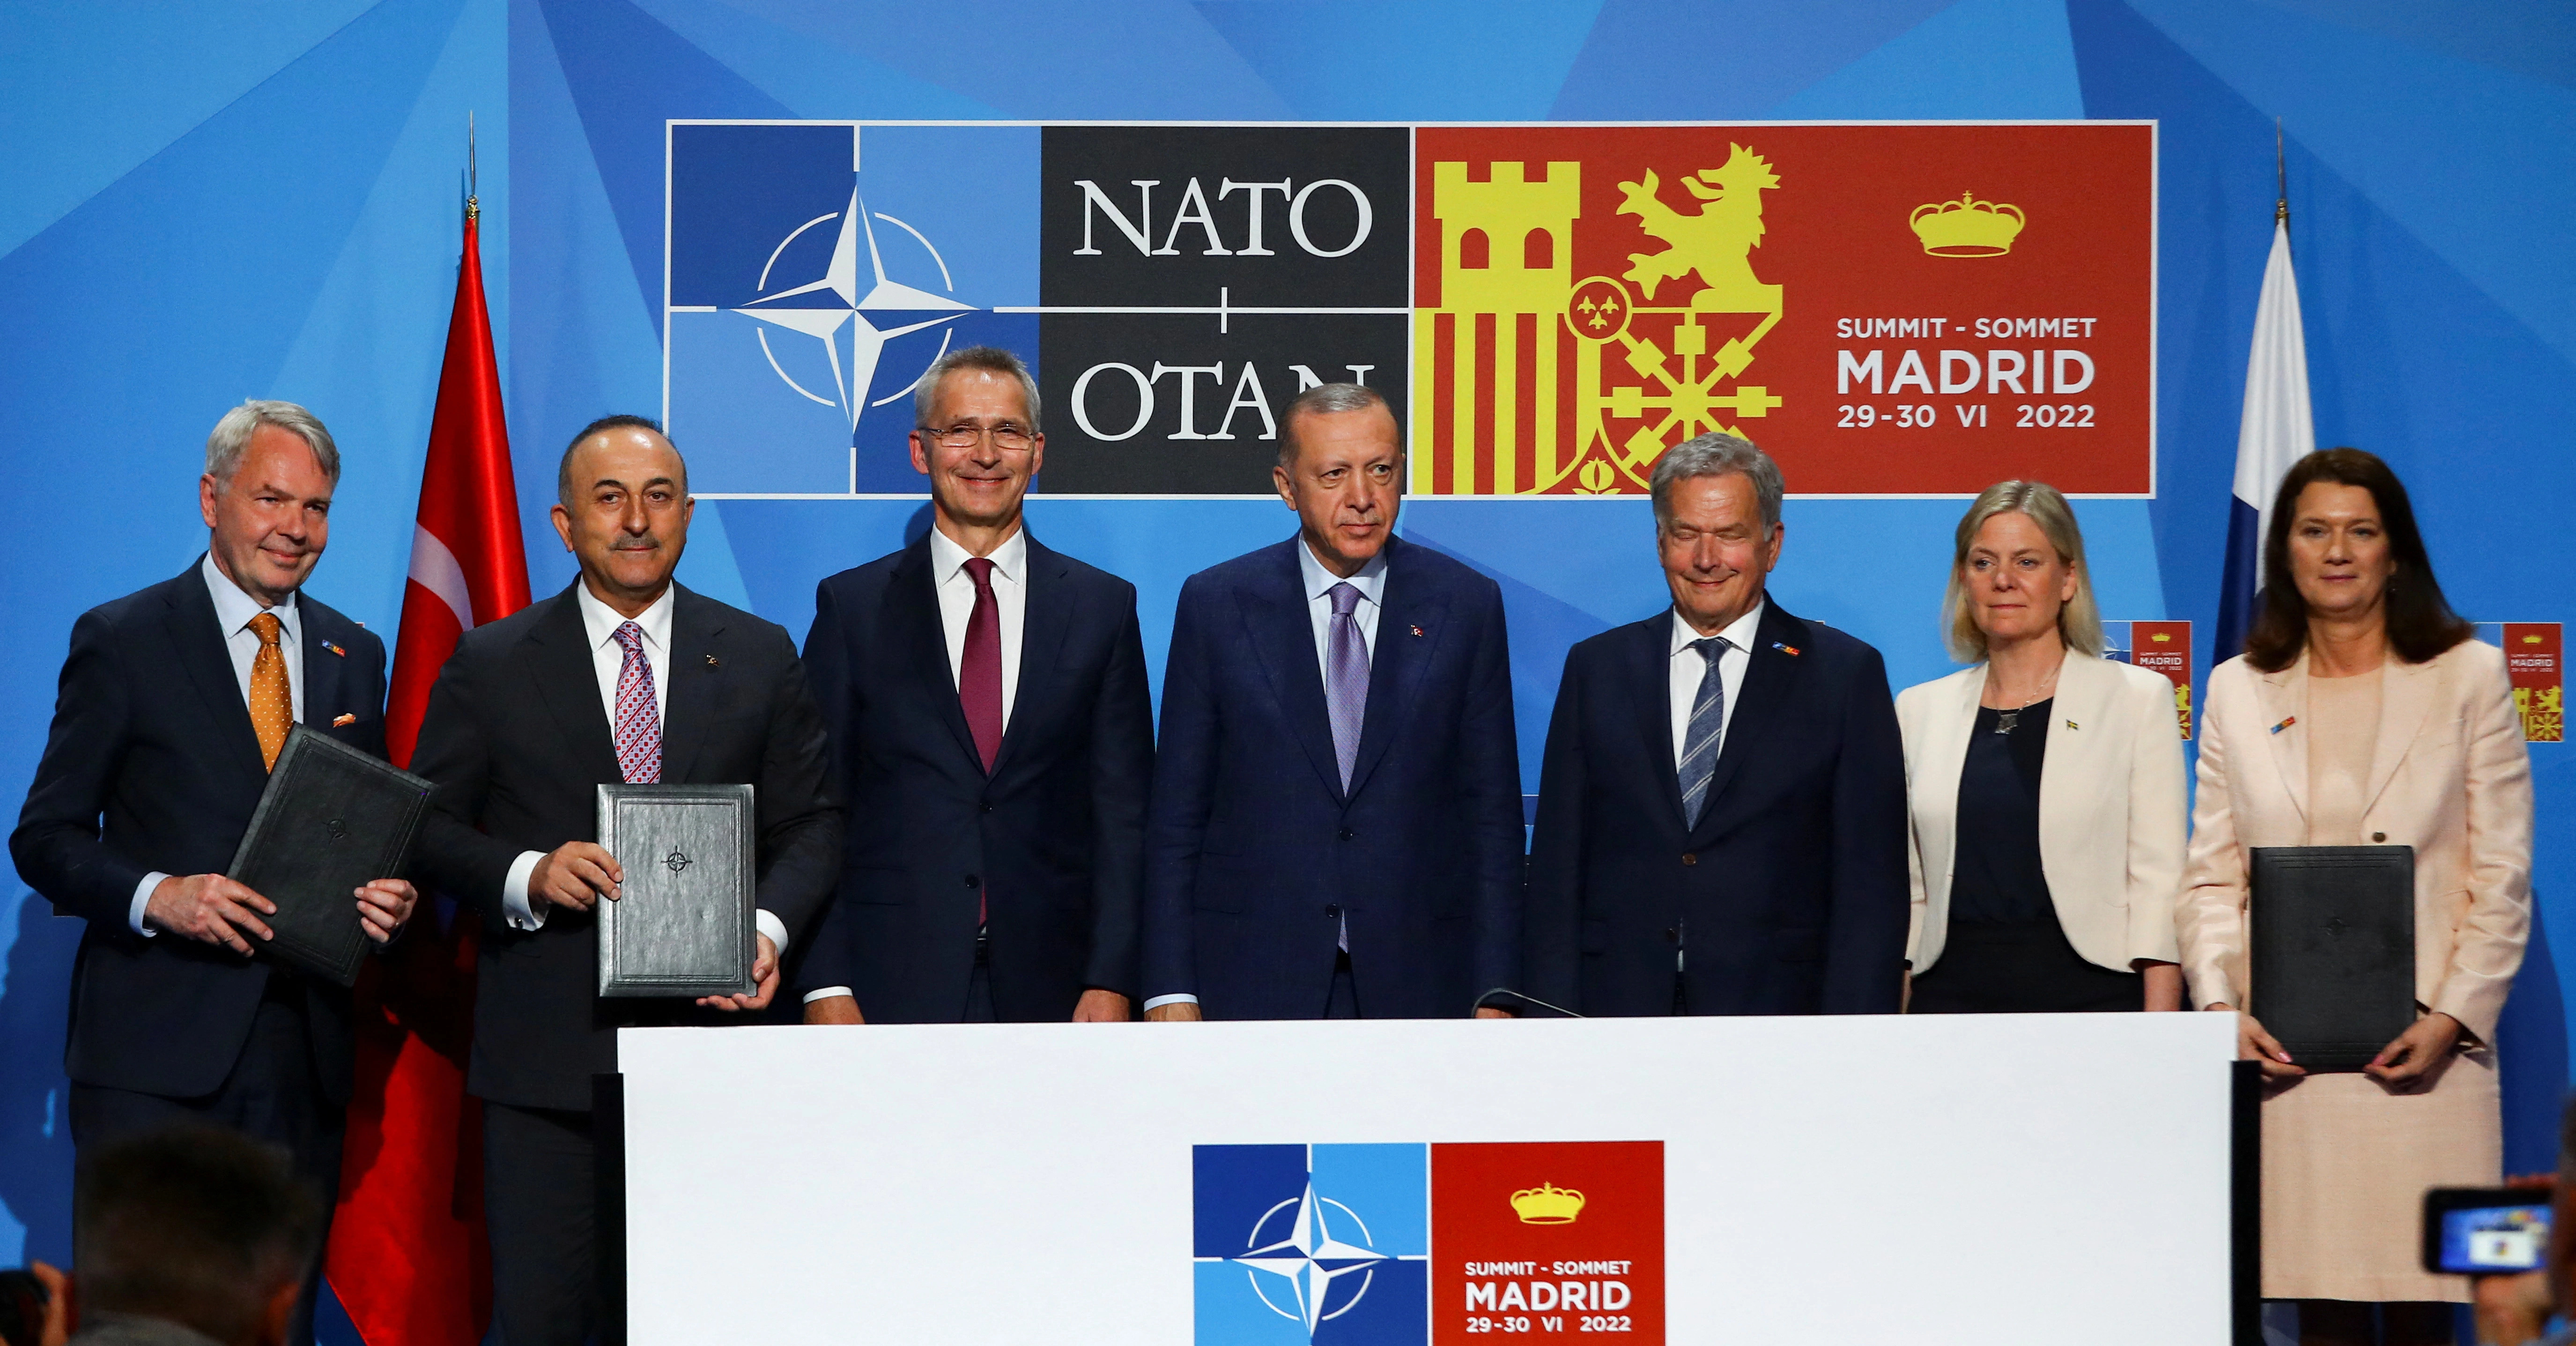 Turkey Relinquishes Veto, Allowing Sweden's NATO Membership